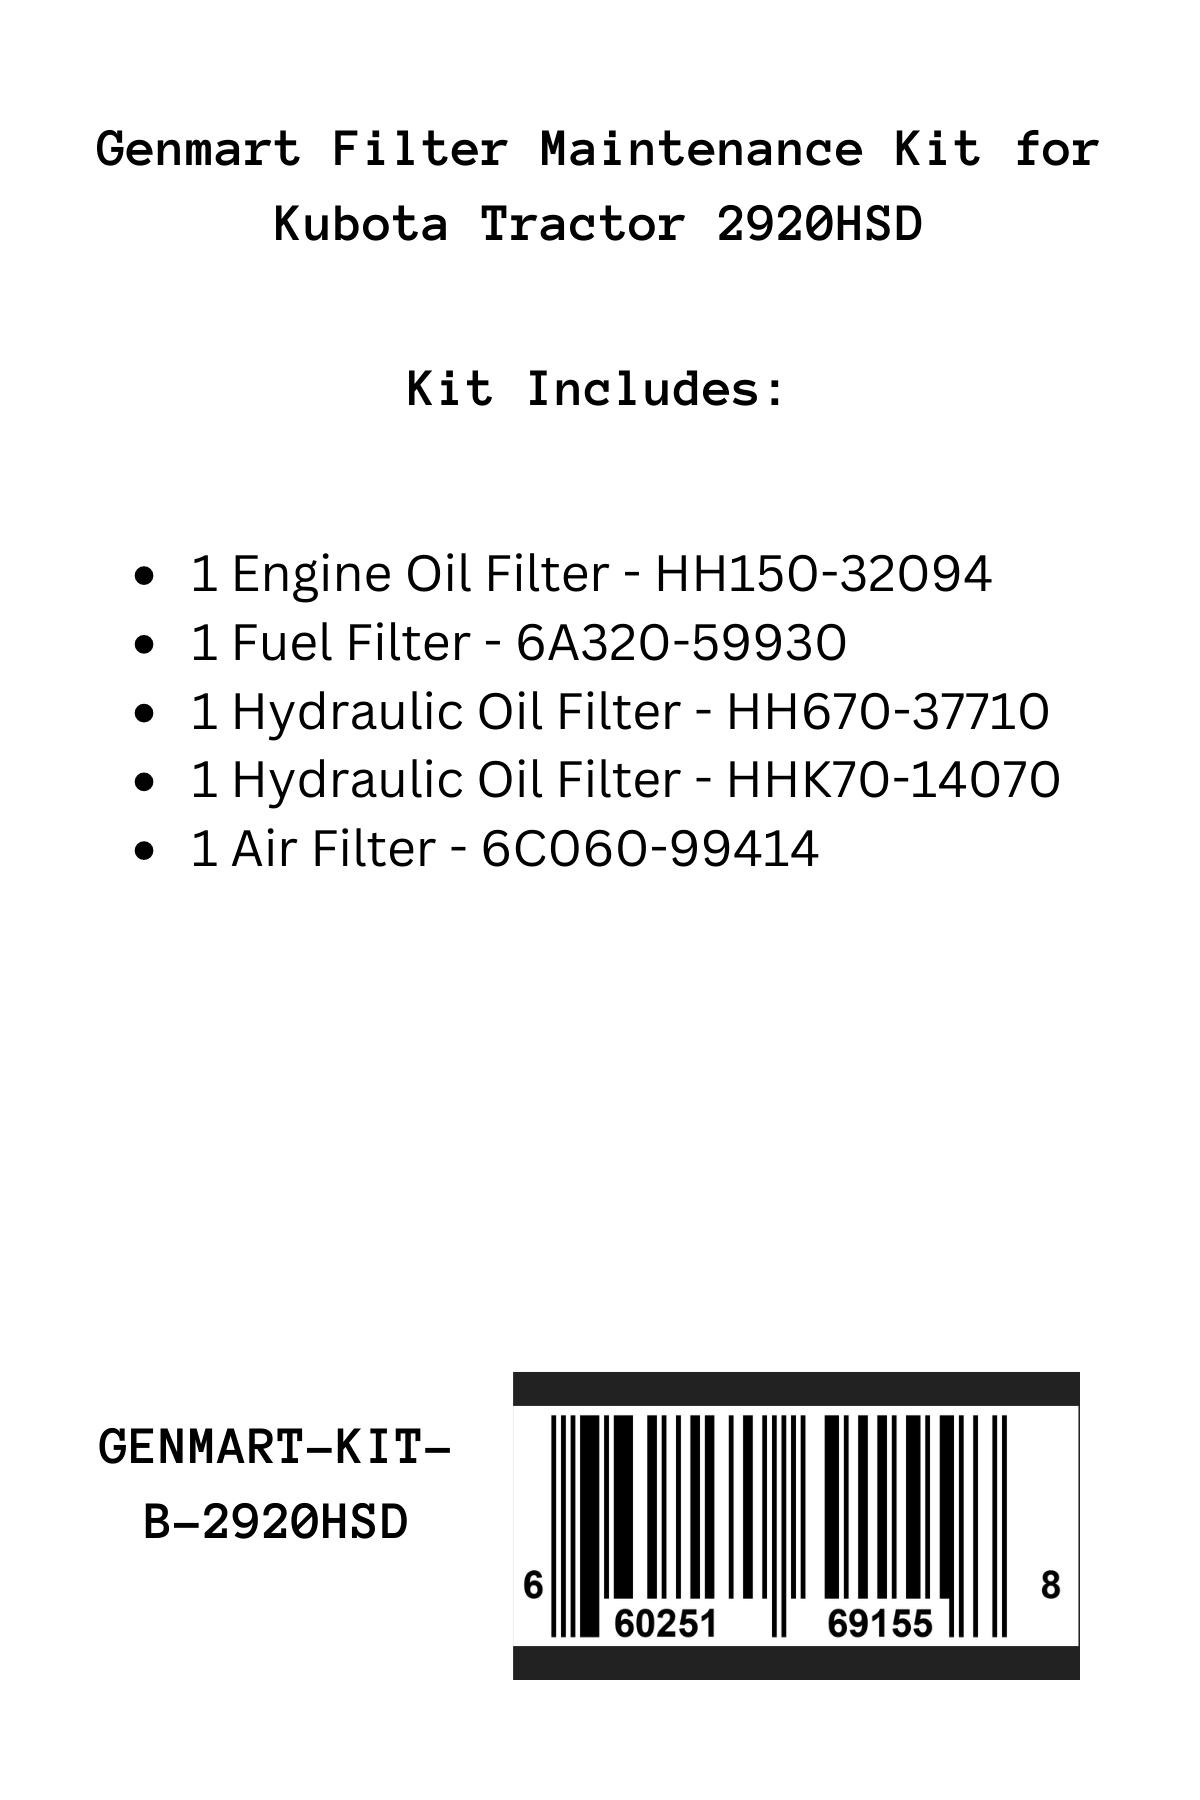 Genmart Maintenance Kit for Kubota Tractor 2920HSD